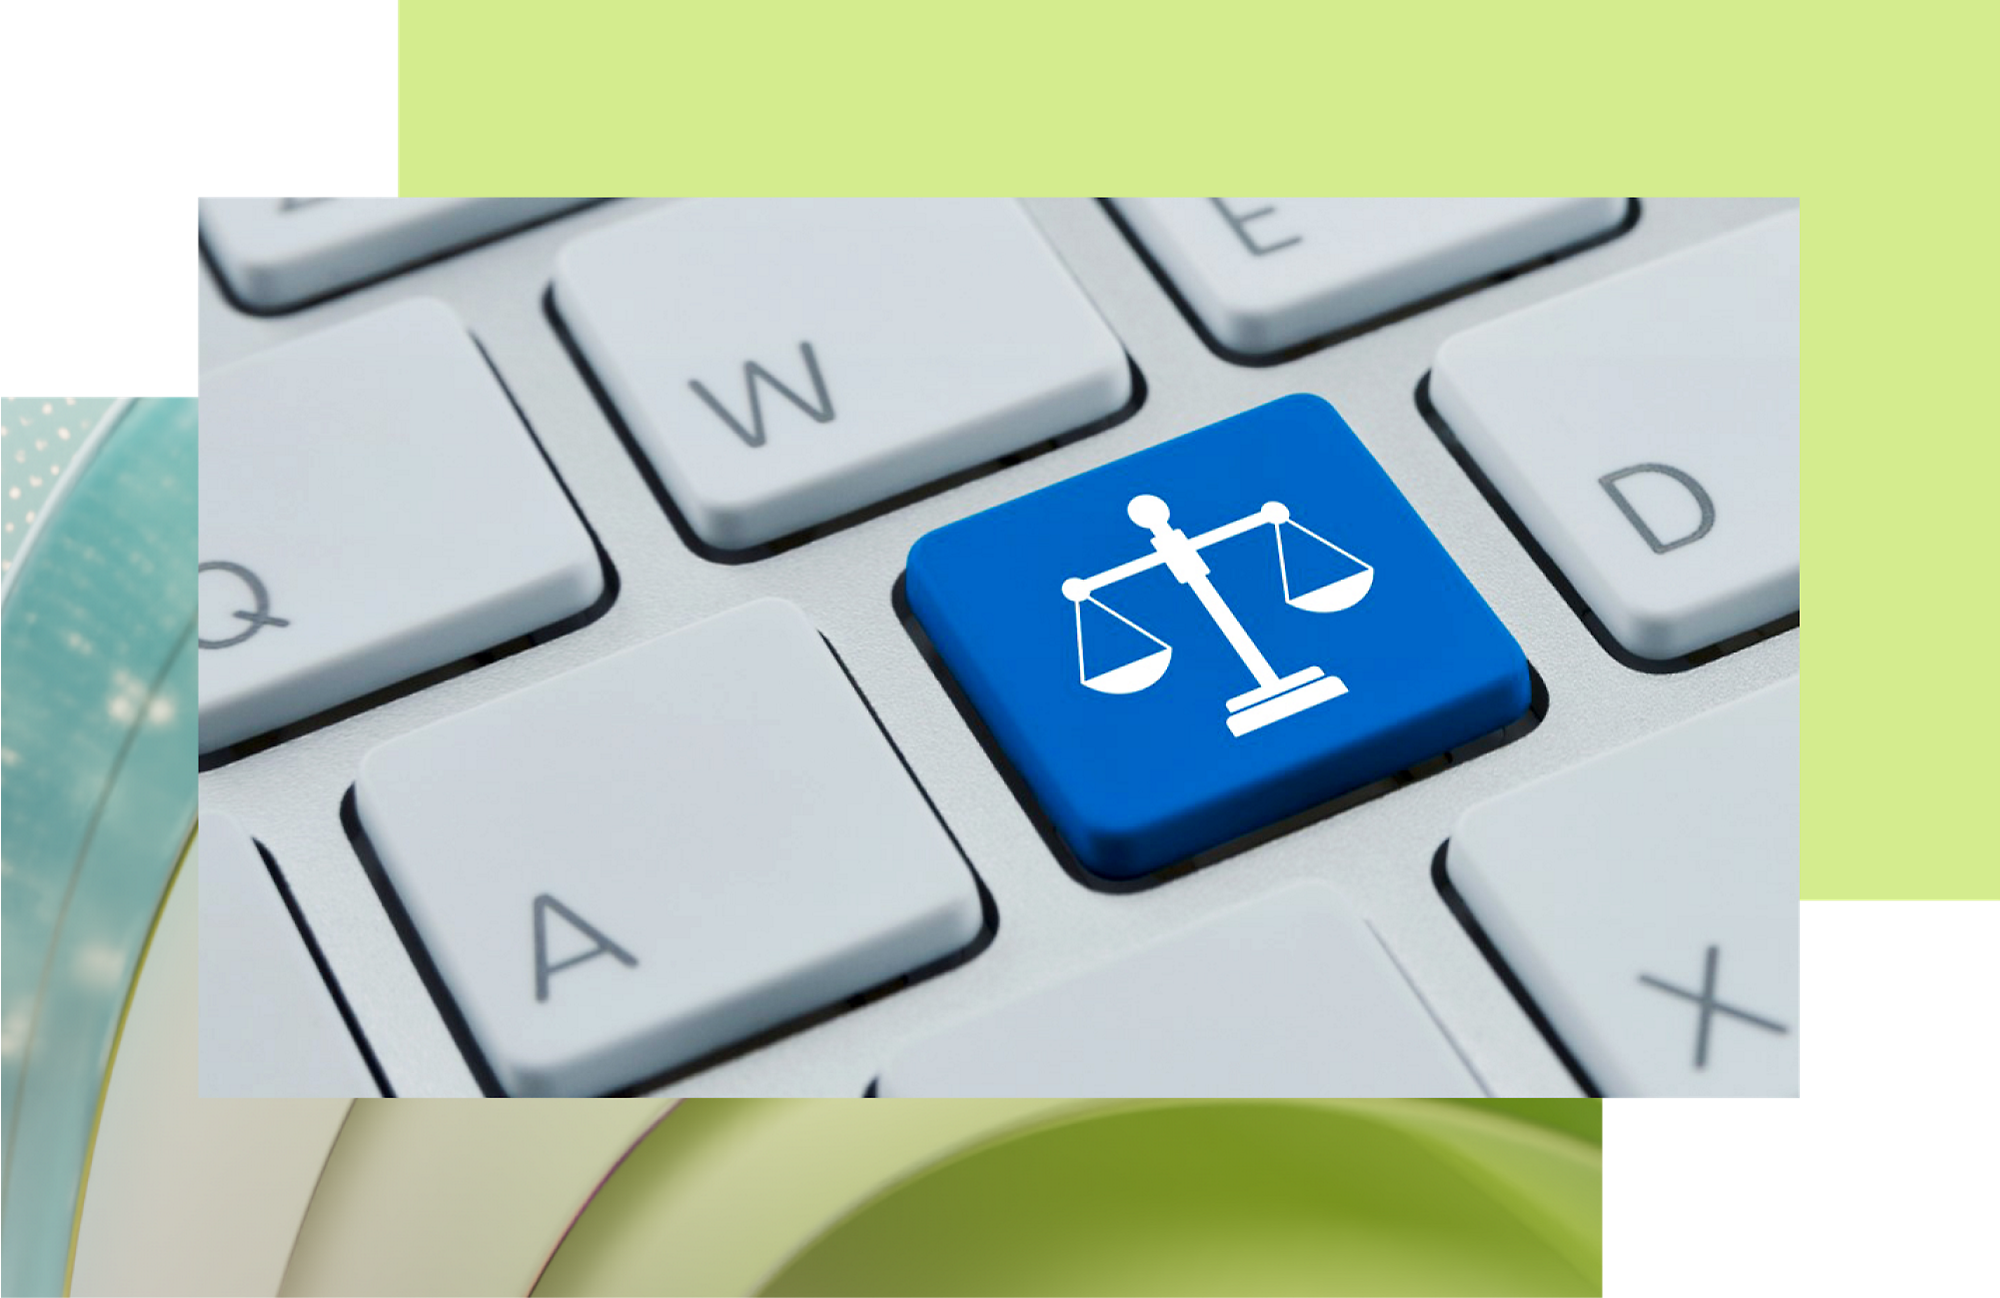 键盘上带有白色司法图标的蓝色键，象征着法律援助或以司法为中心的技术。